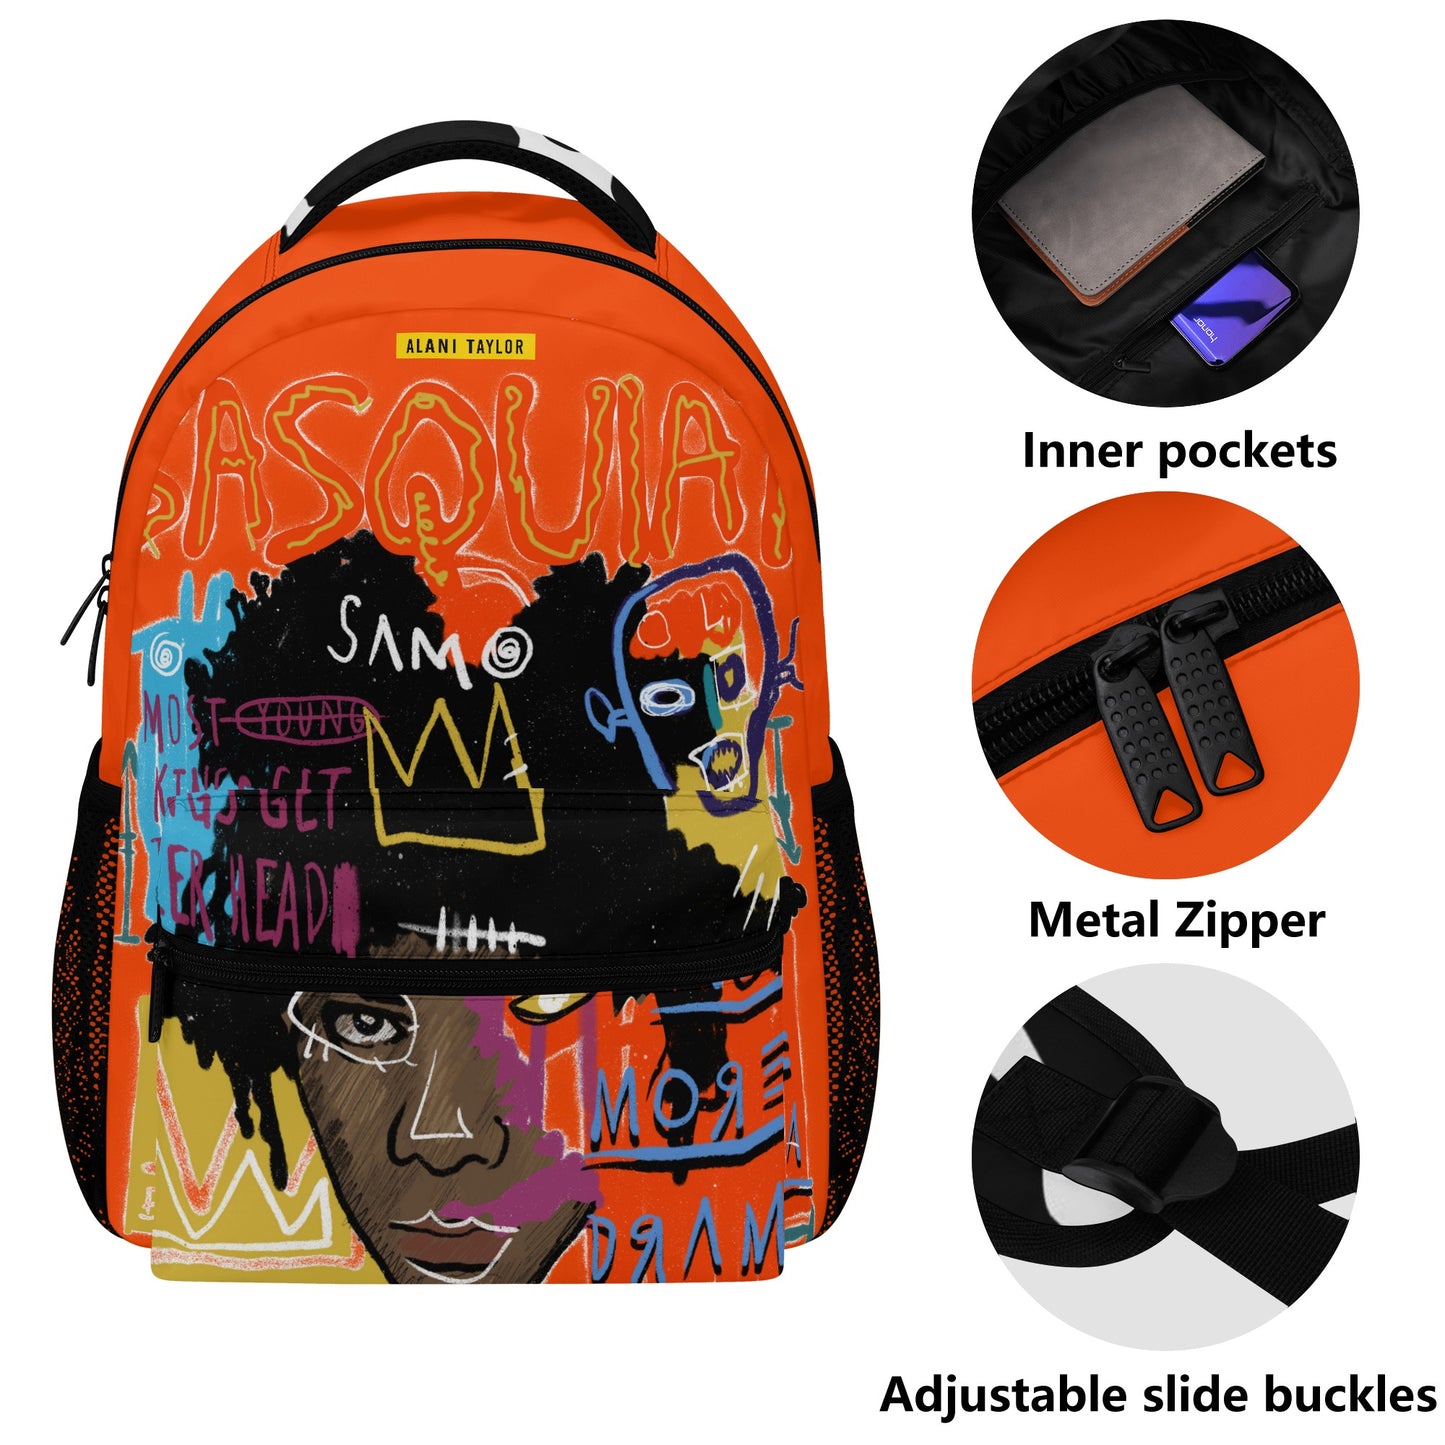 The B Art Backpack